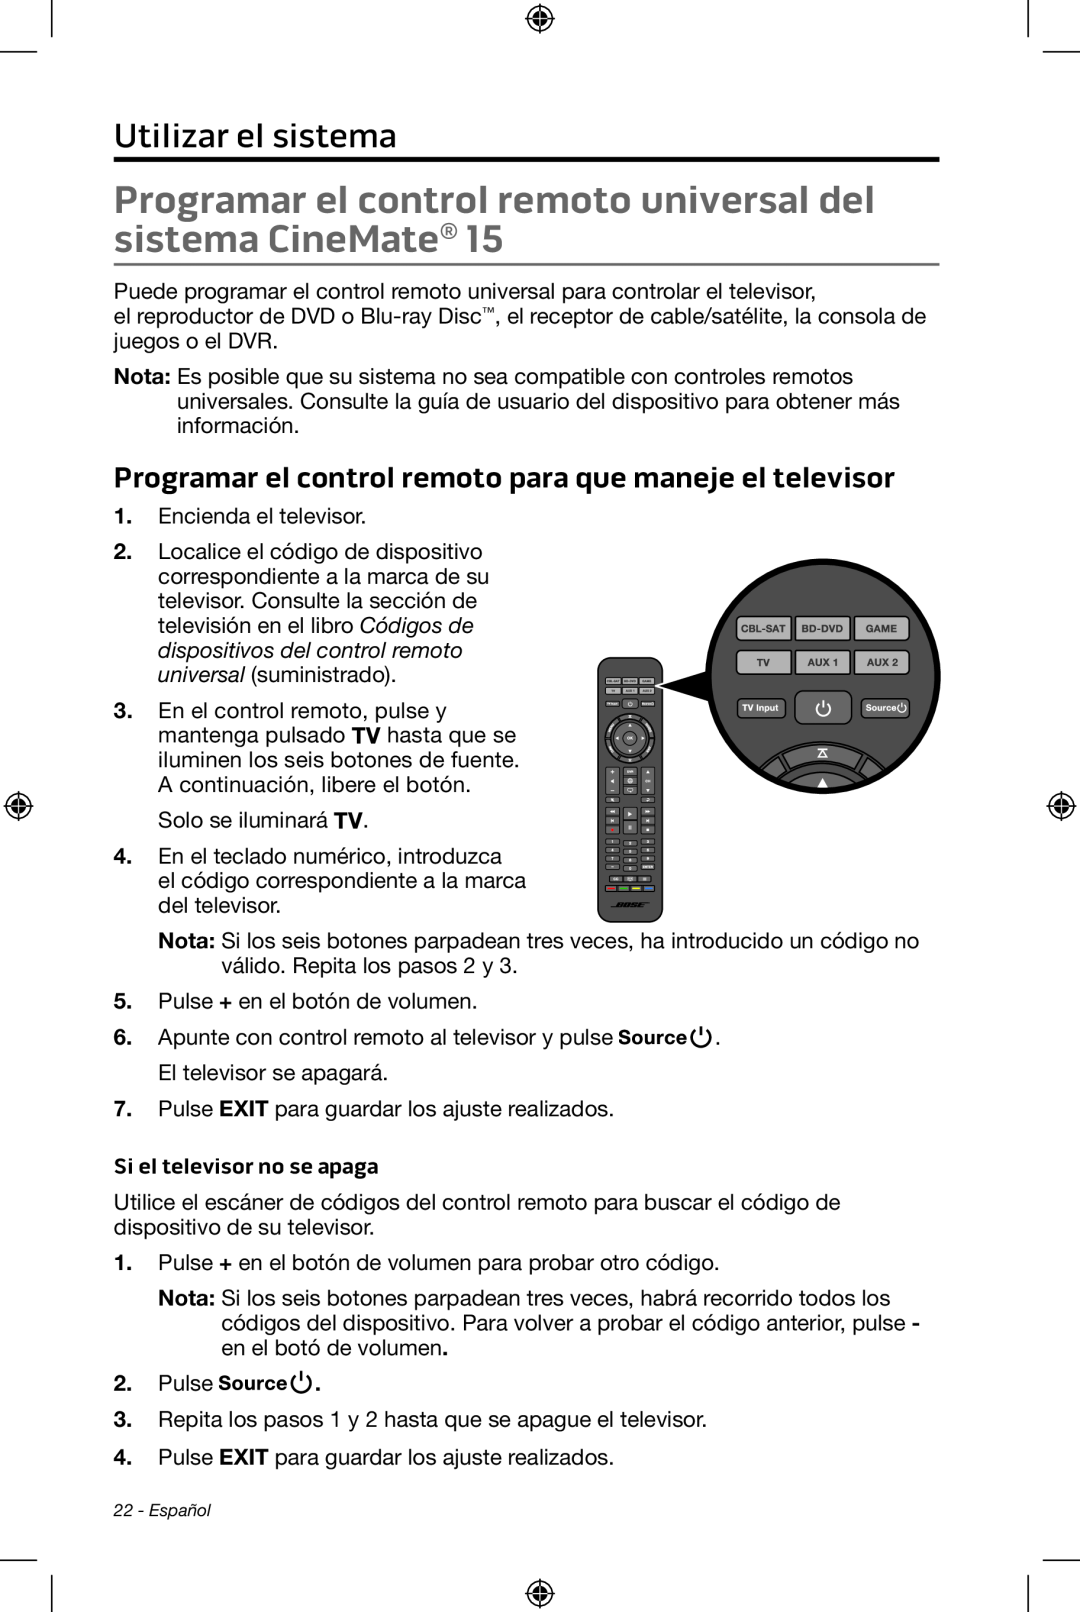 Bose CineMate 15/10 manual Utilizar el sistema, Si el televisor no se apaga 